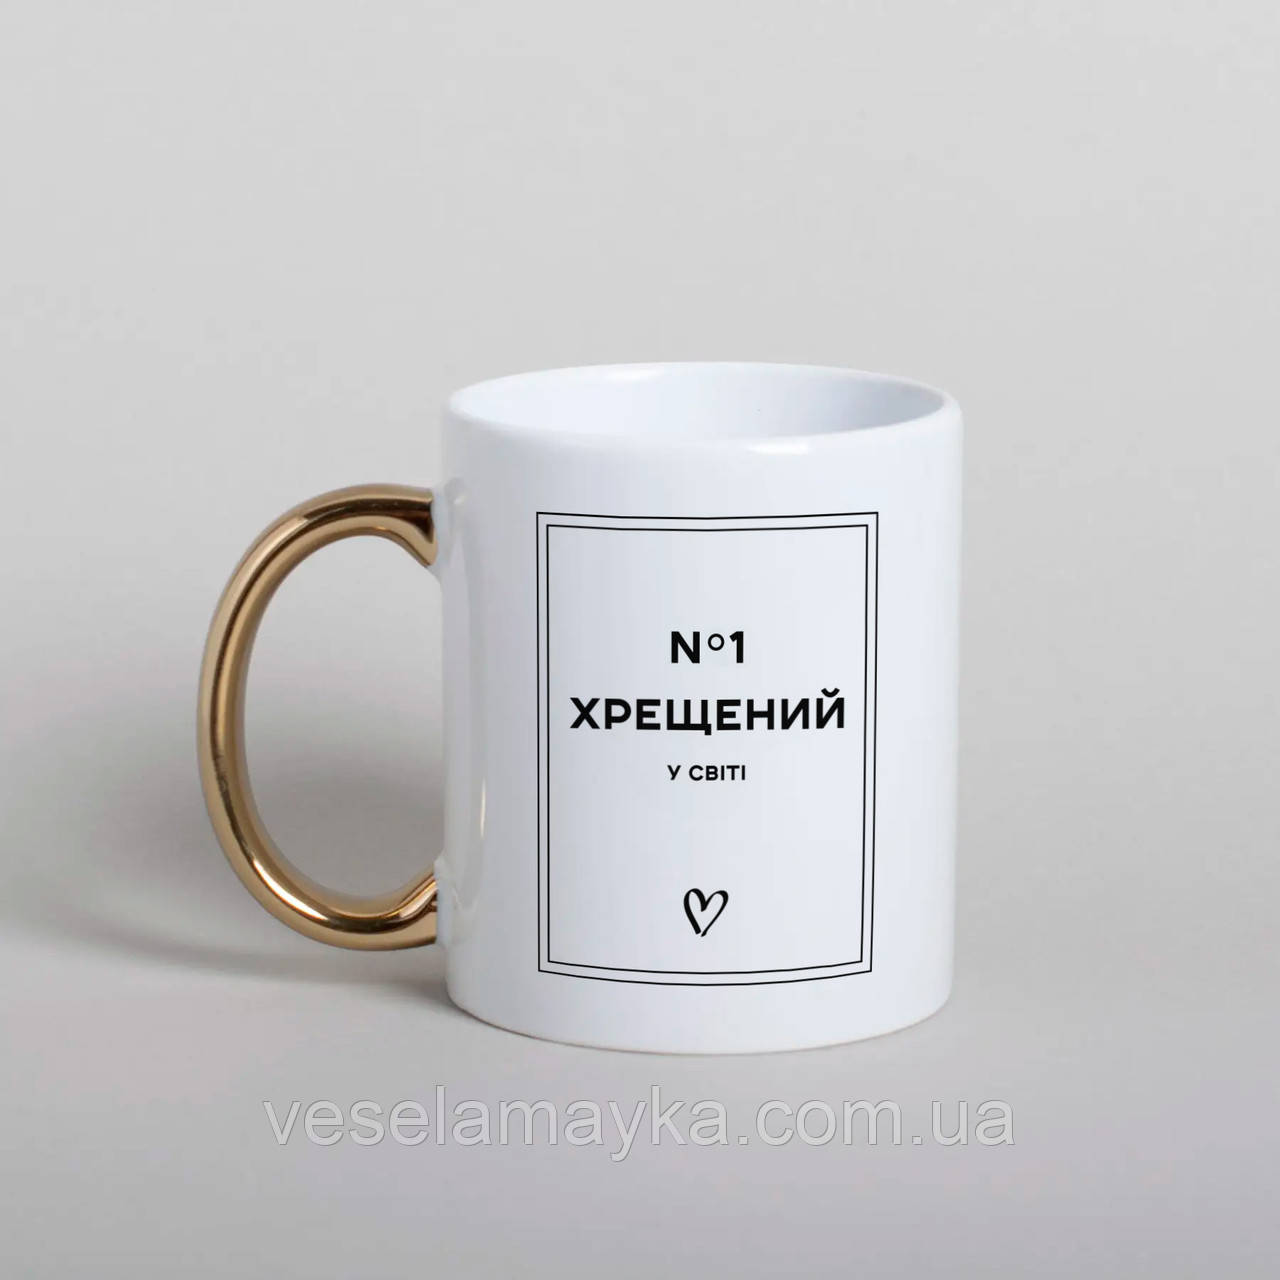 Чашка "Хрещений №1 у світі", українська